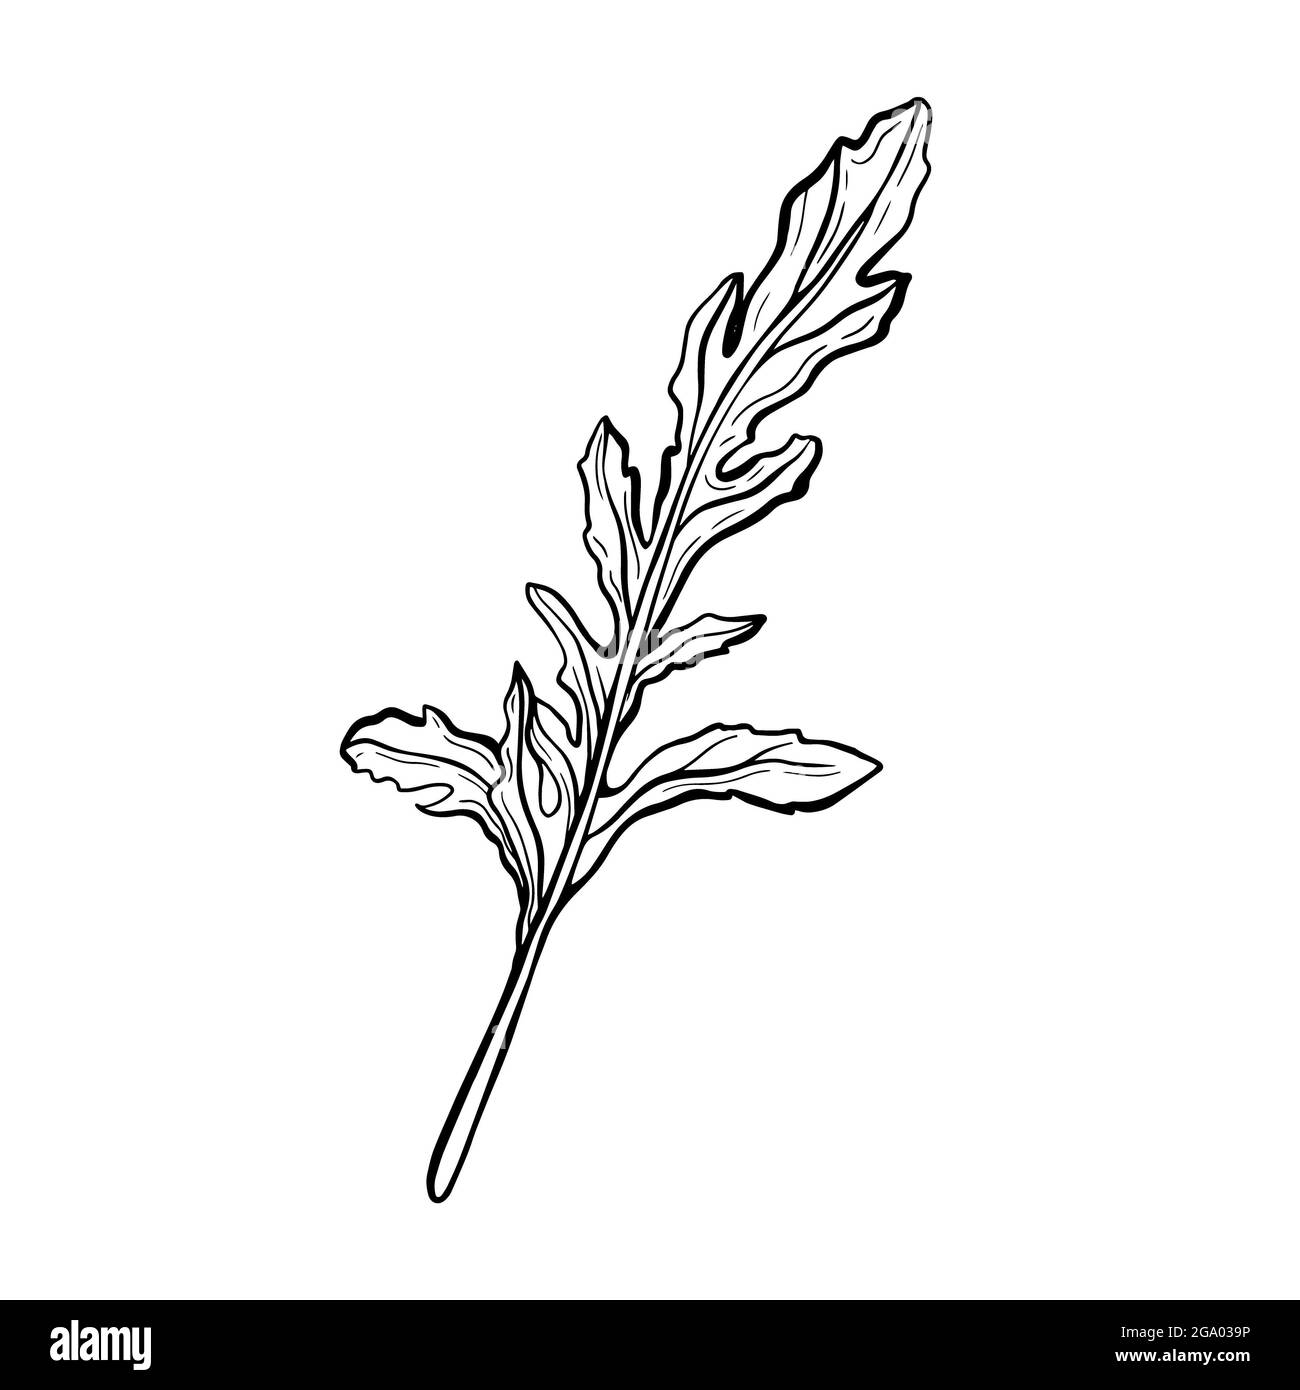 Rucola isoliert auf weißem Hintergrund. Rucolla duftendes, leckeres Grün.Italienische Kräuter. Handgezeichnete Illustration im Doodle-Stil. Skizze Stockfoto